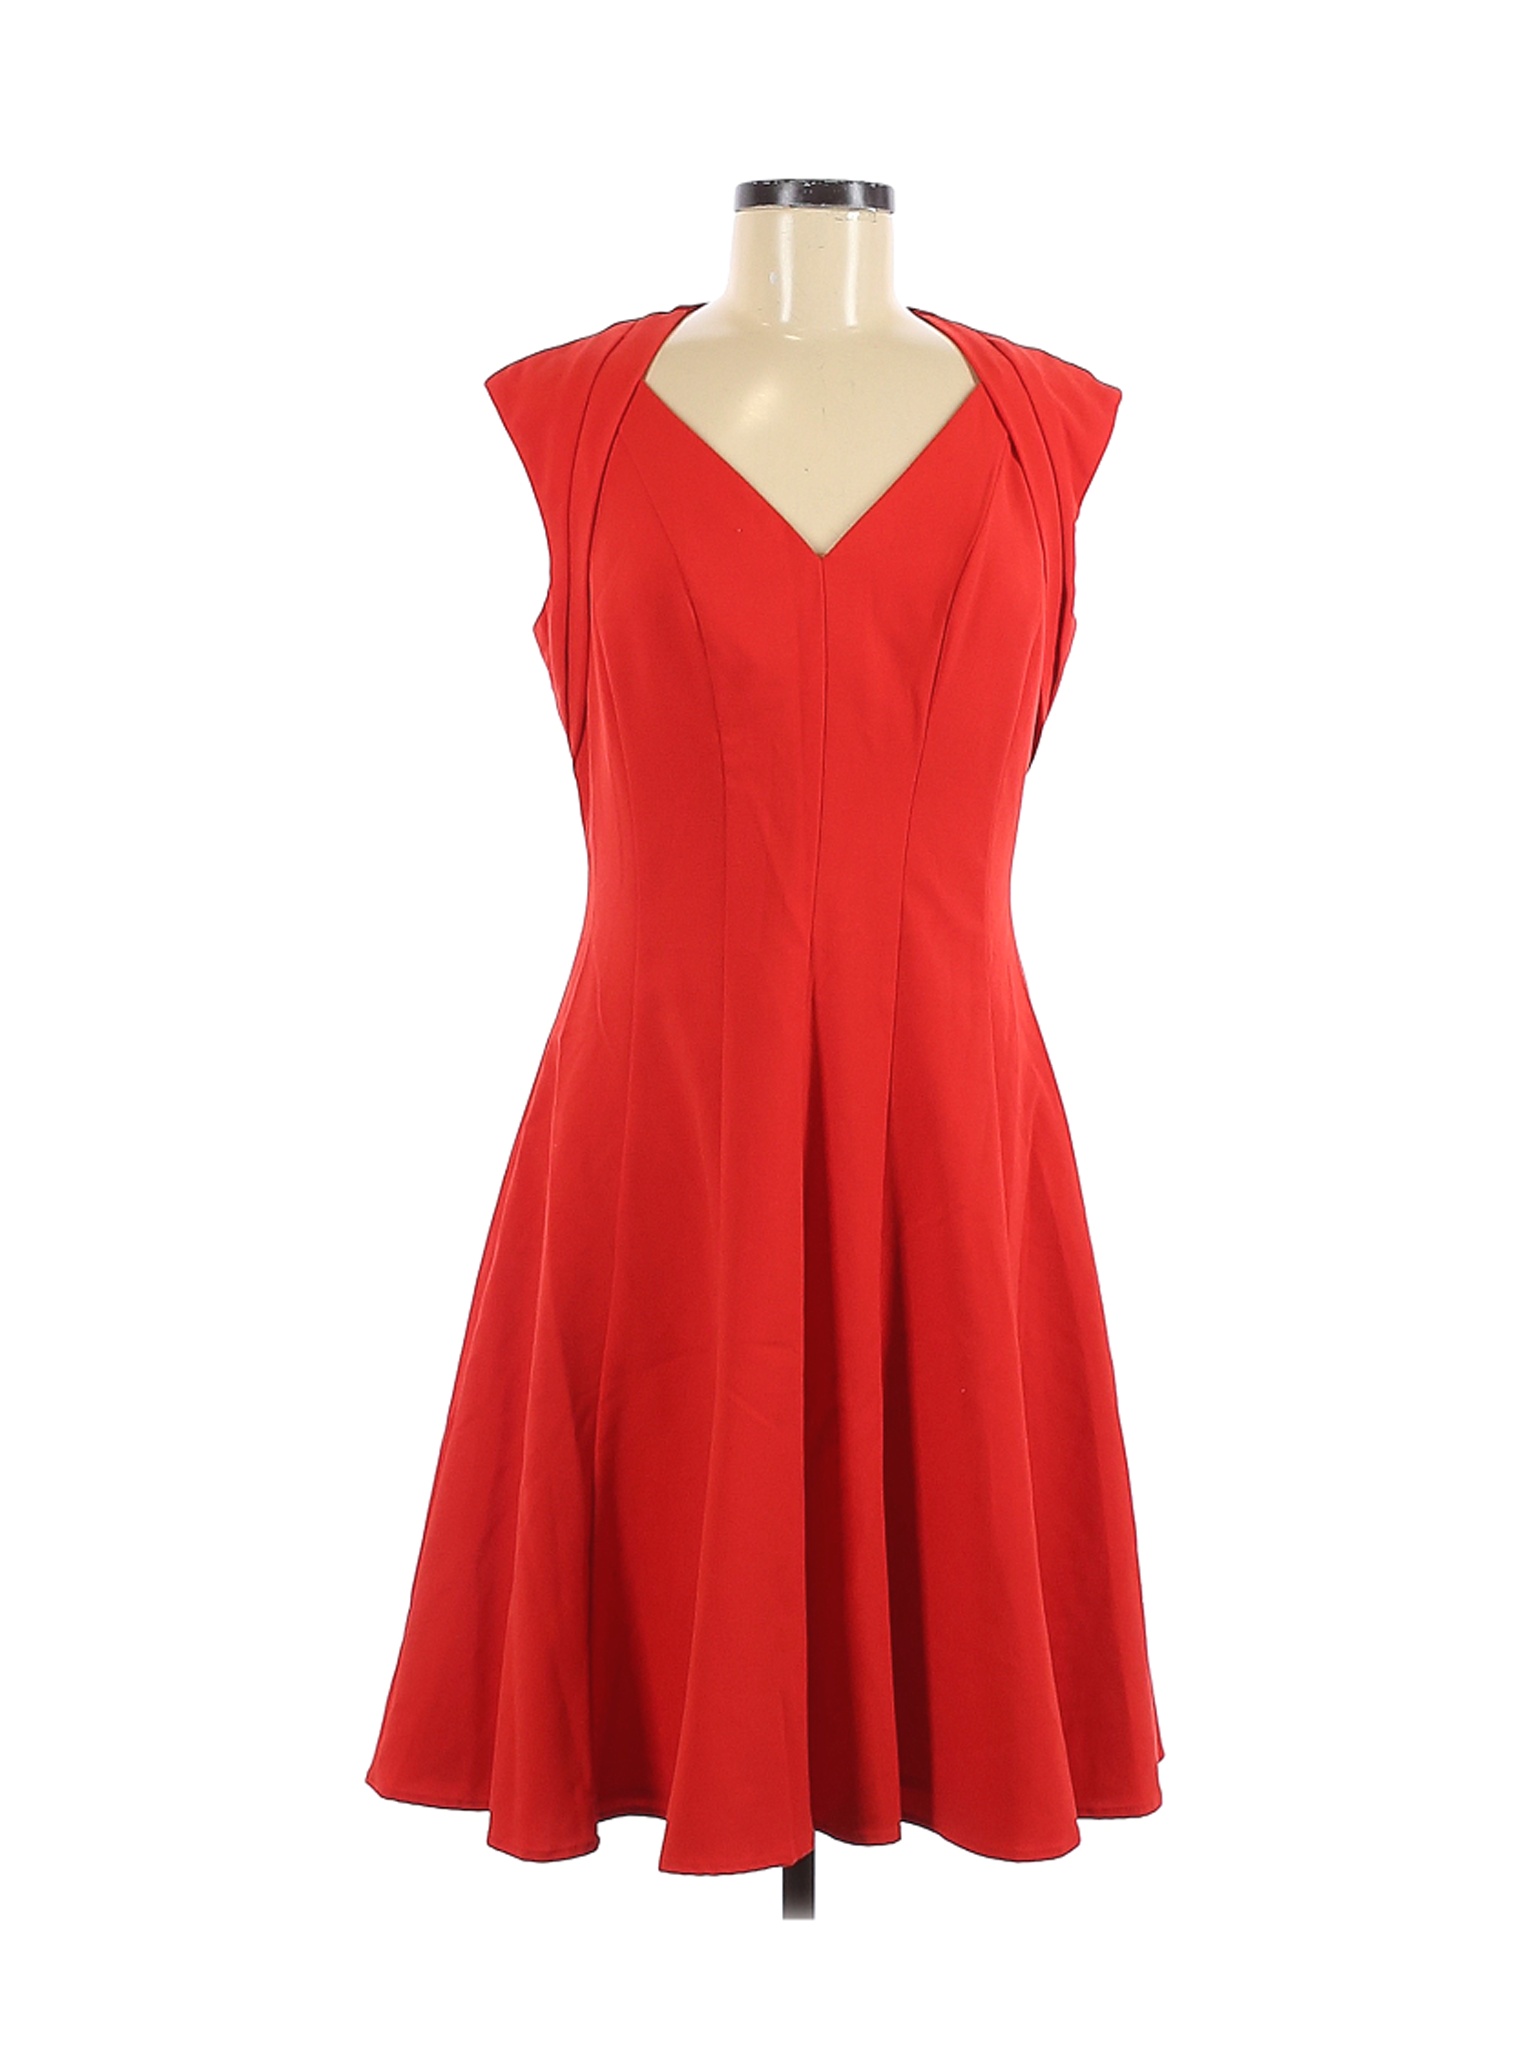 Calvin Klein Women Red Cocktail Dress 6 | eBay